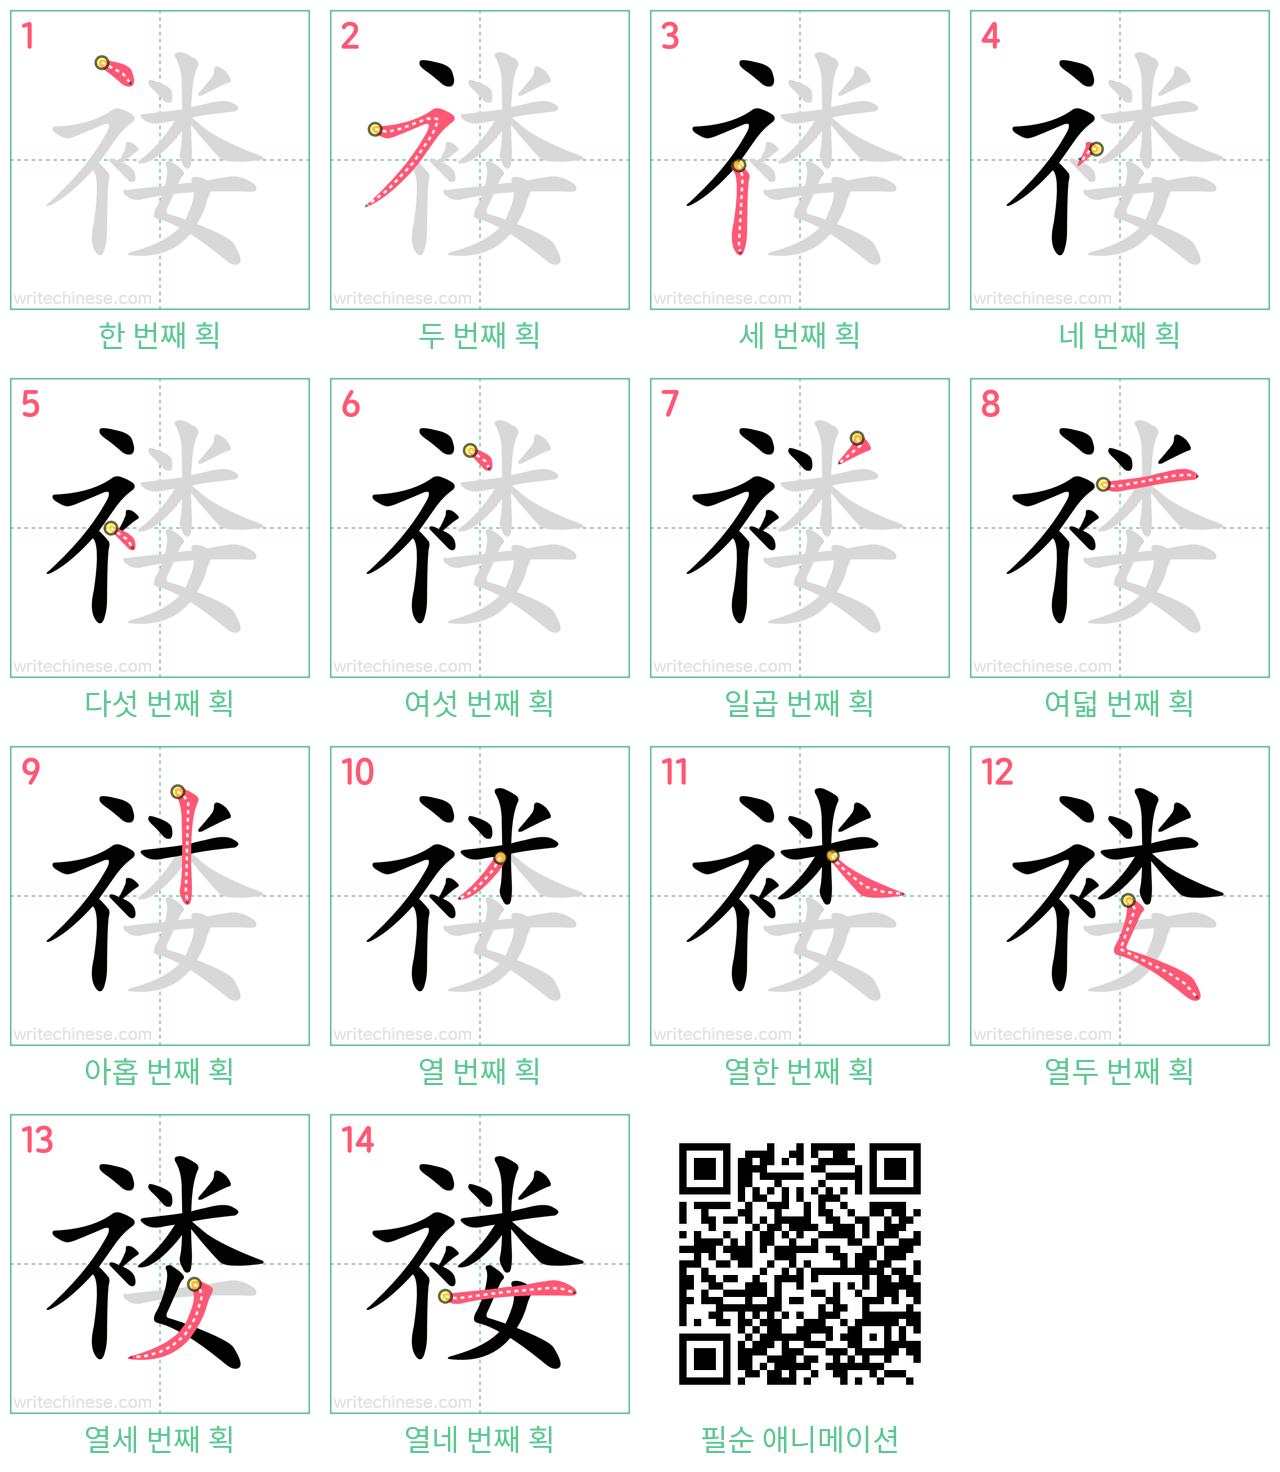 褛 step-by-step stroke order diagrams